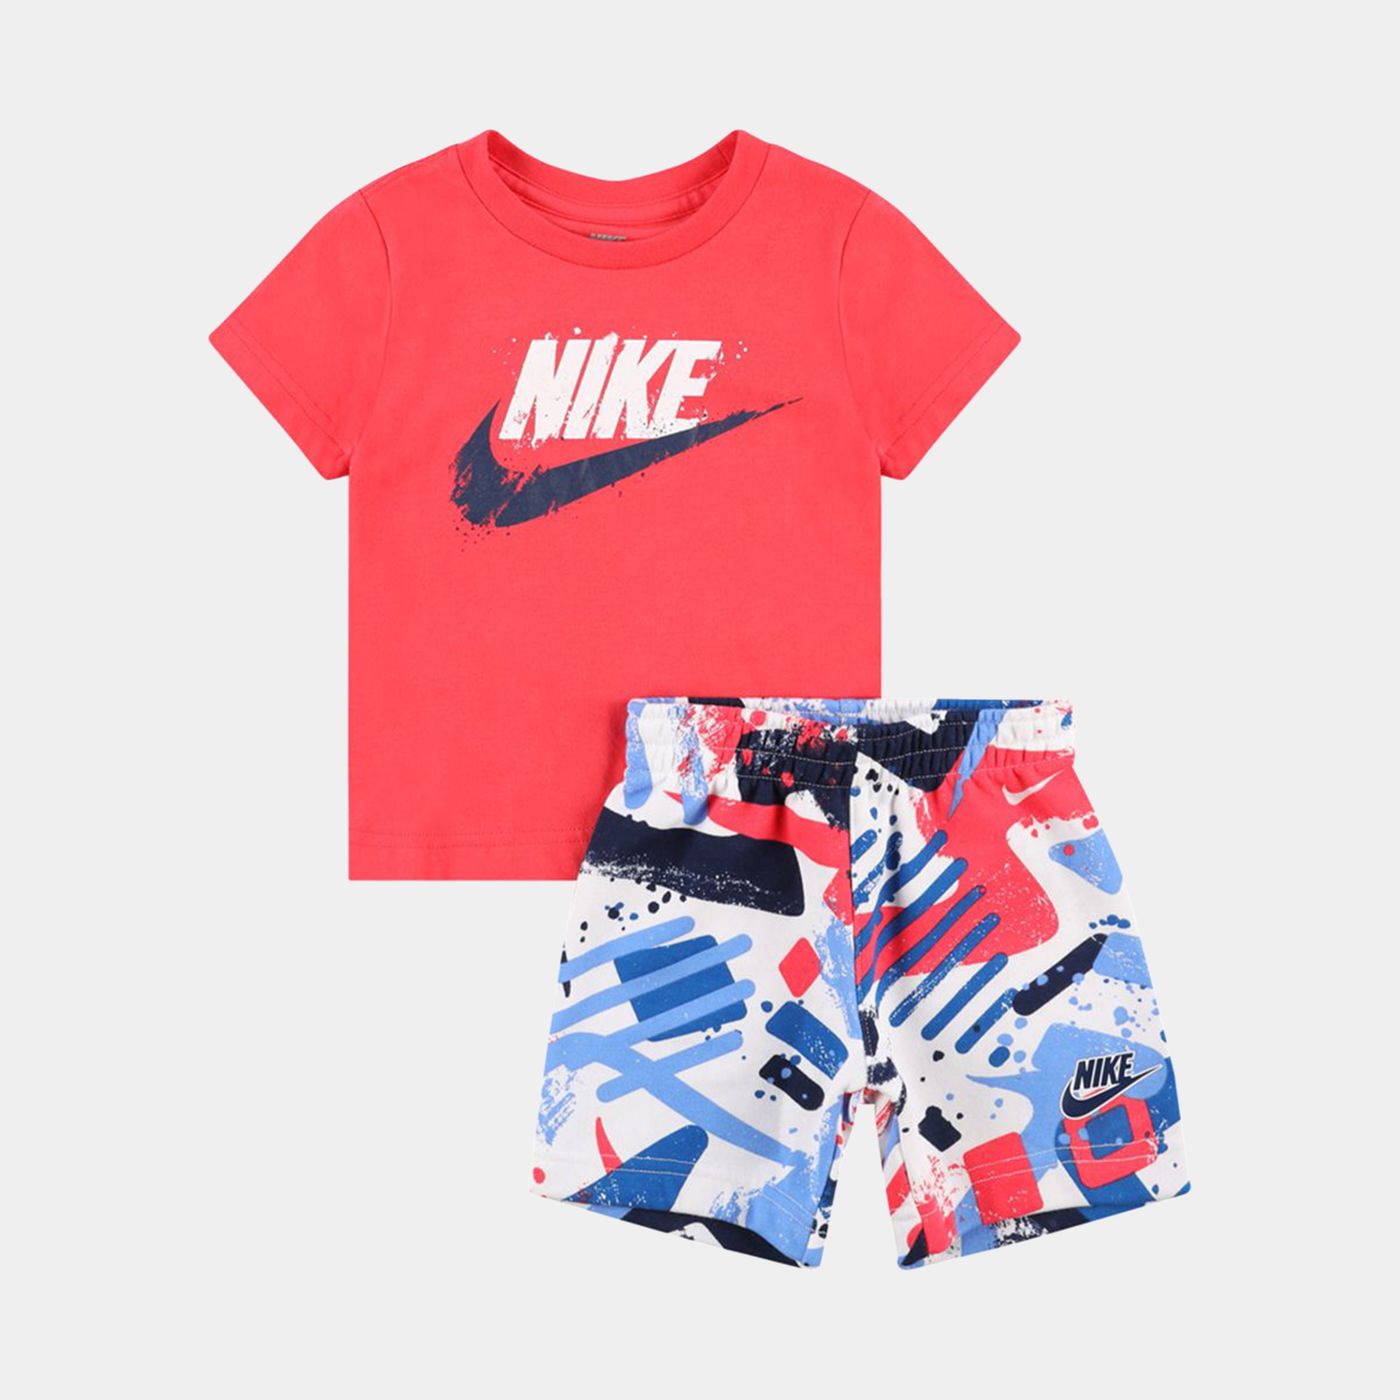 66J176 - Outfits - Nike